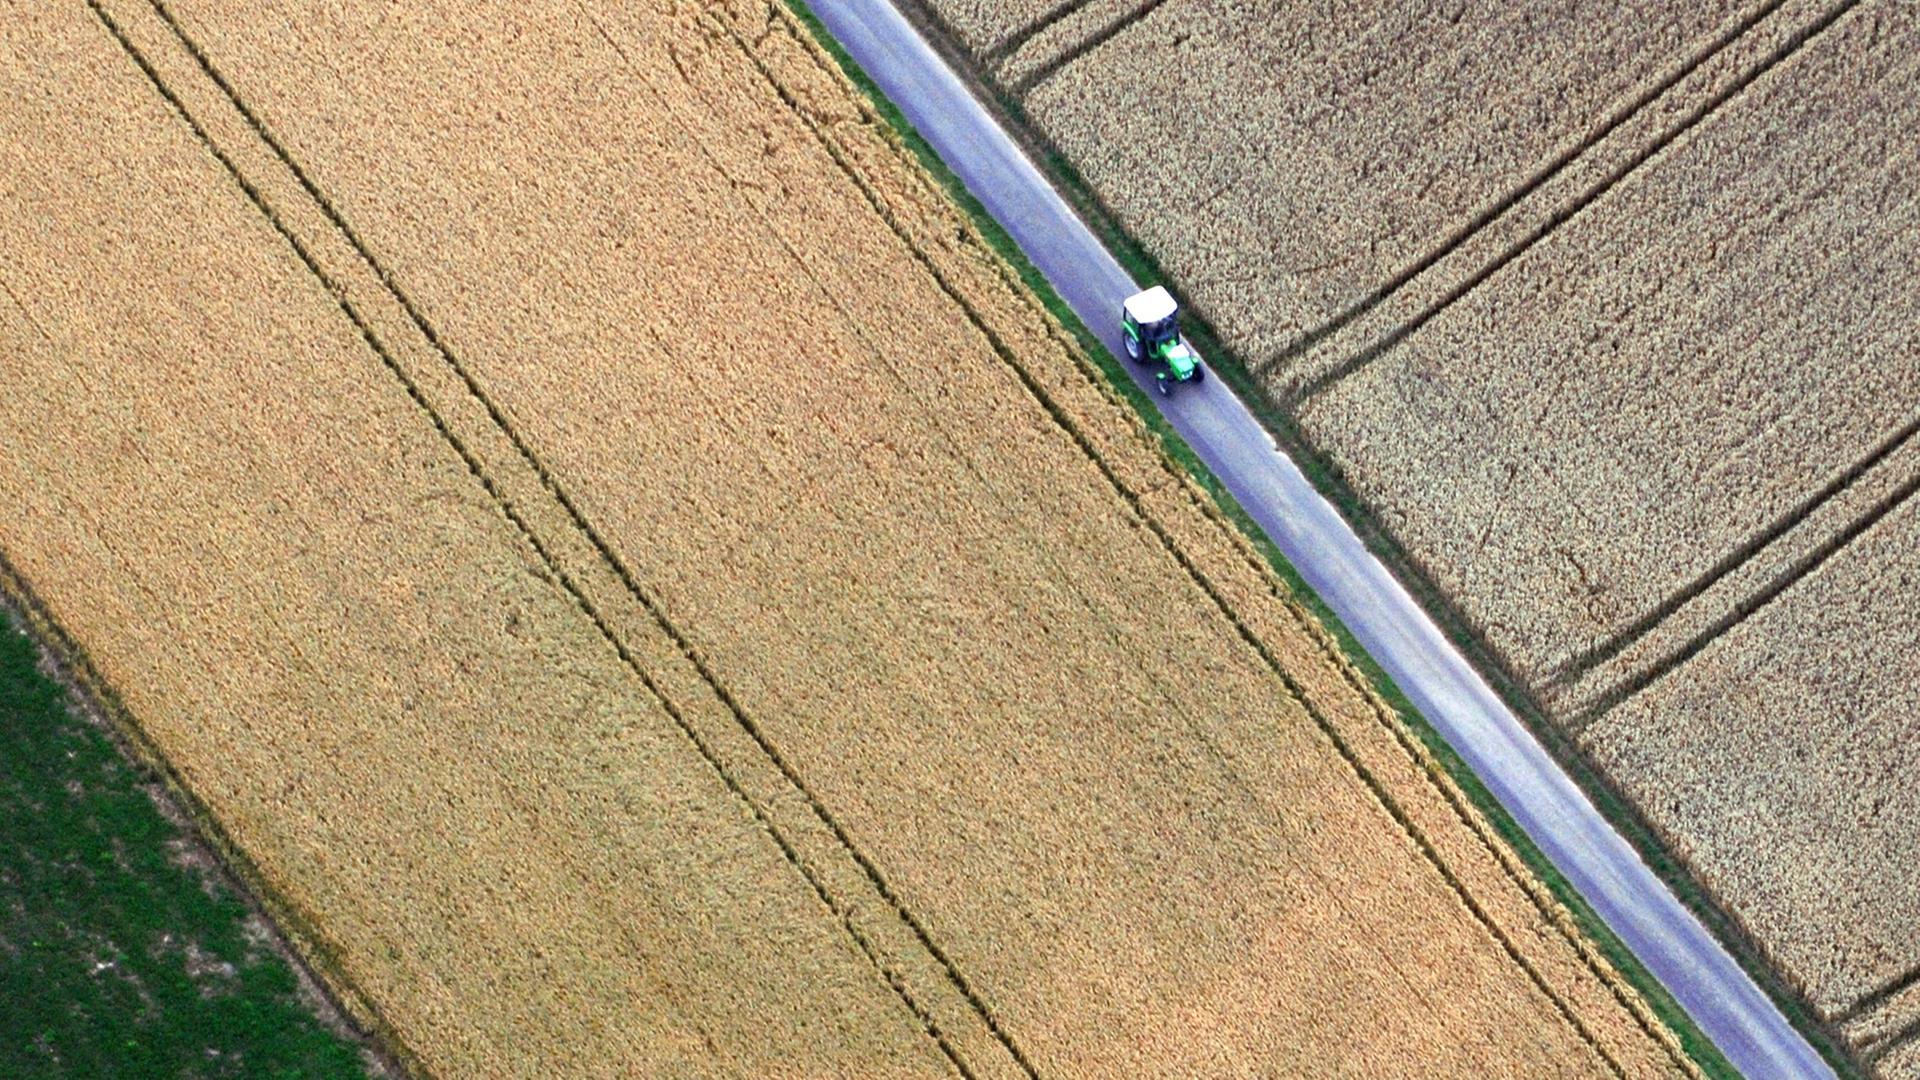 Blick aus einem Heissluftballon auf Getreidefelder bei Limburg, zwischen denen ein Traktor fährt, aufgenommen am 22.07.2008.